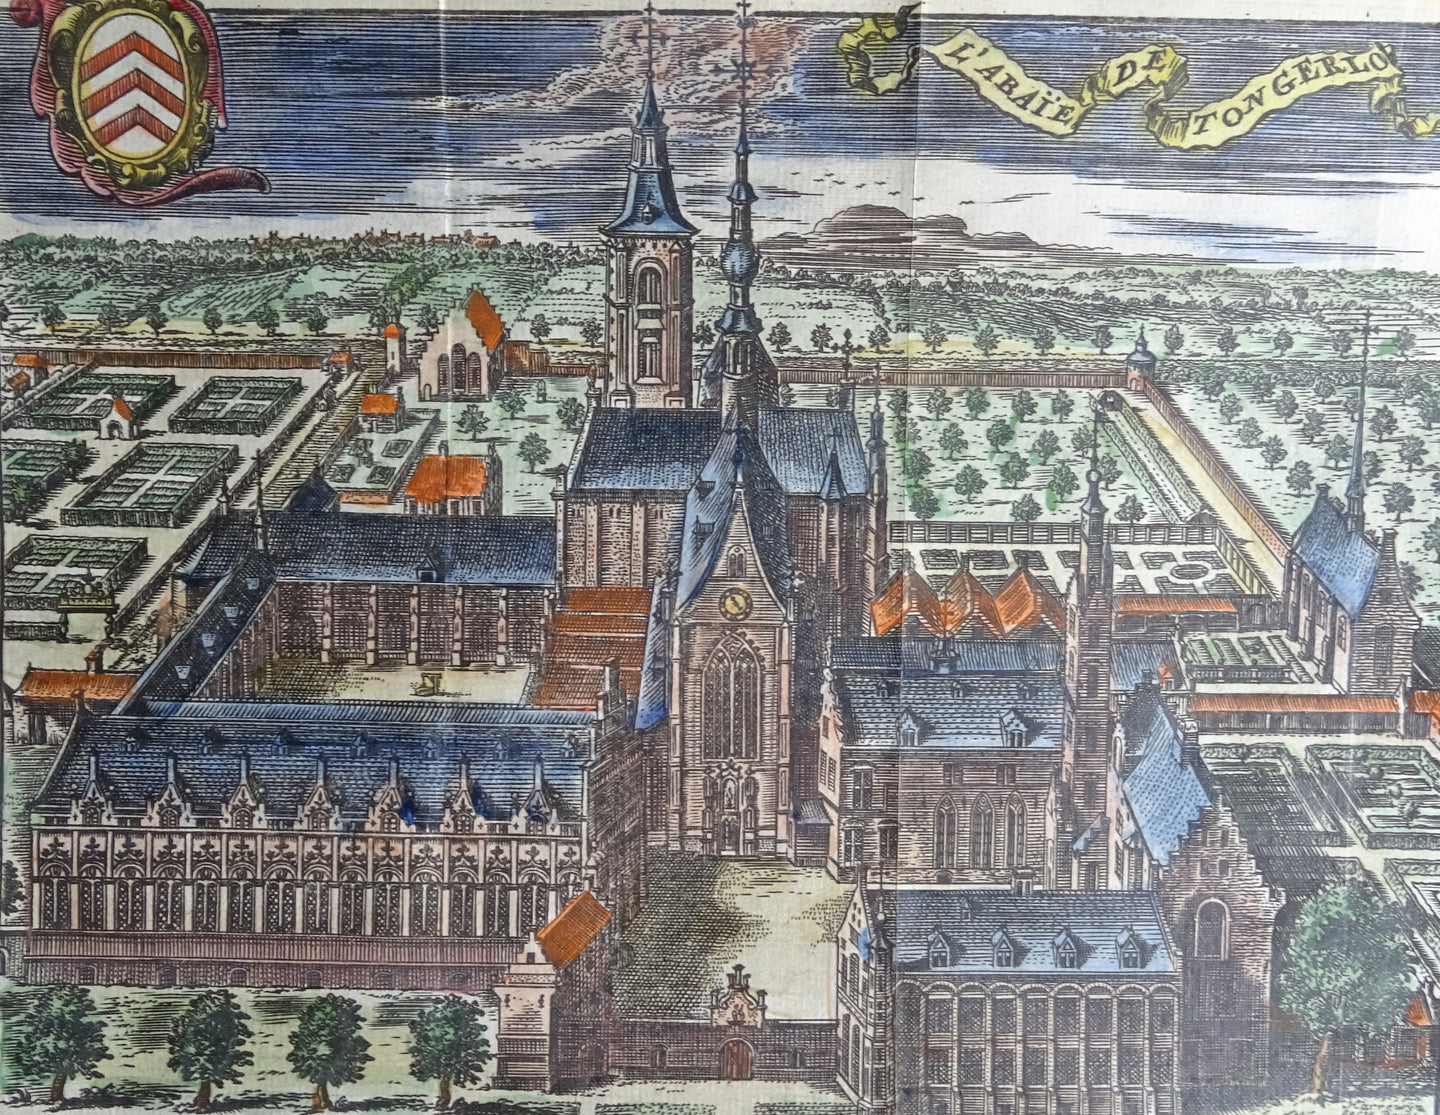 L'Abaïe de Tongerlo ( Abdij van Tongerlo )  - Harrewijn - ca  1743